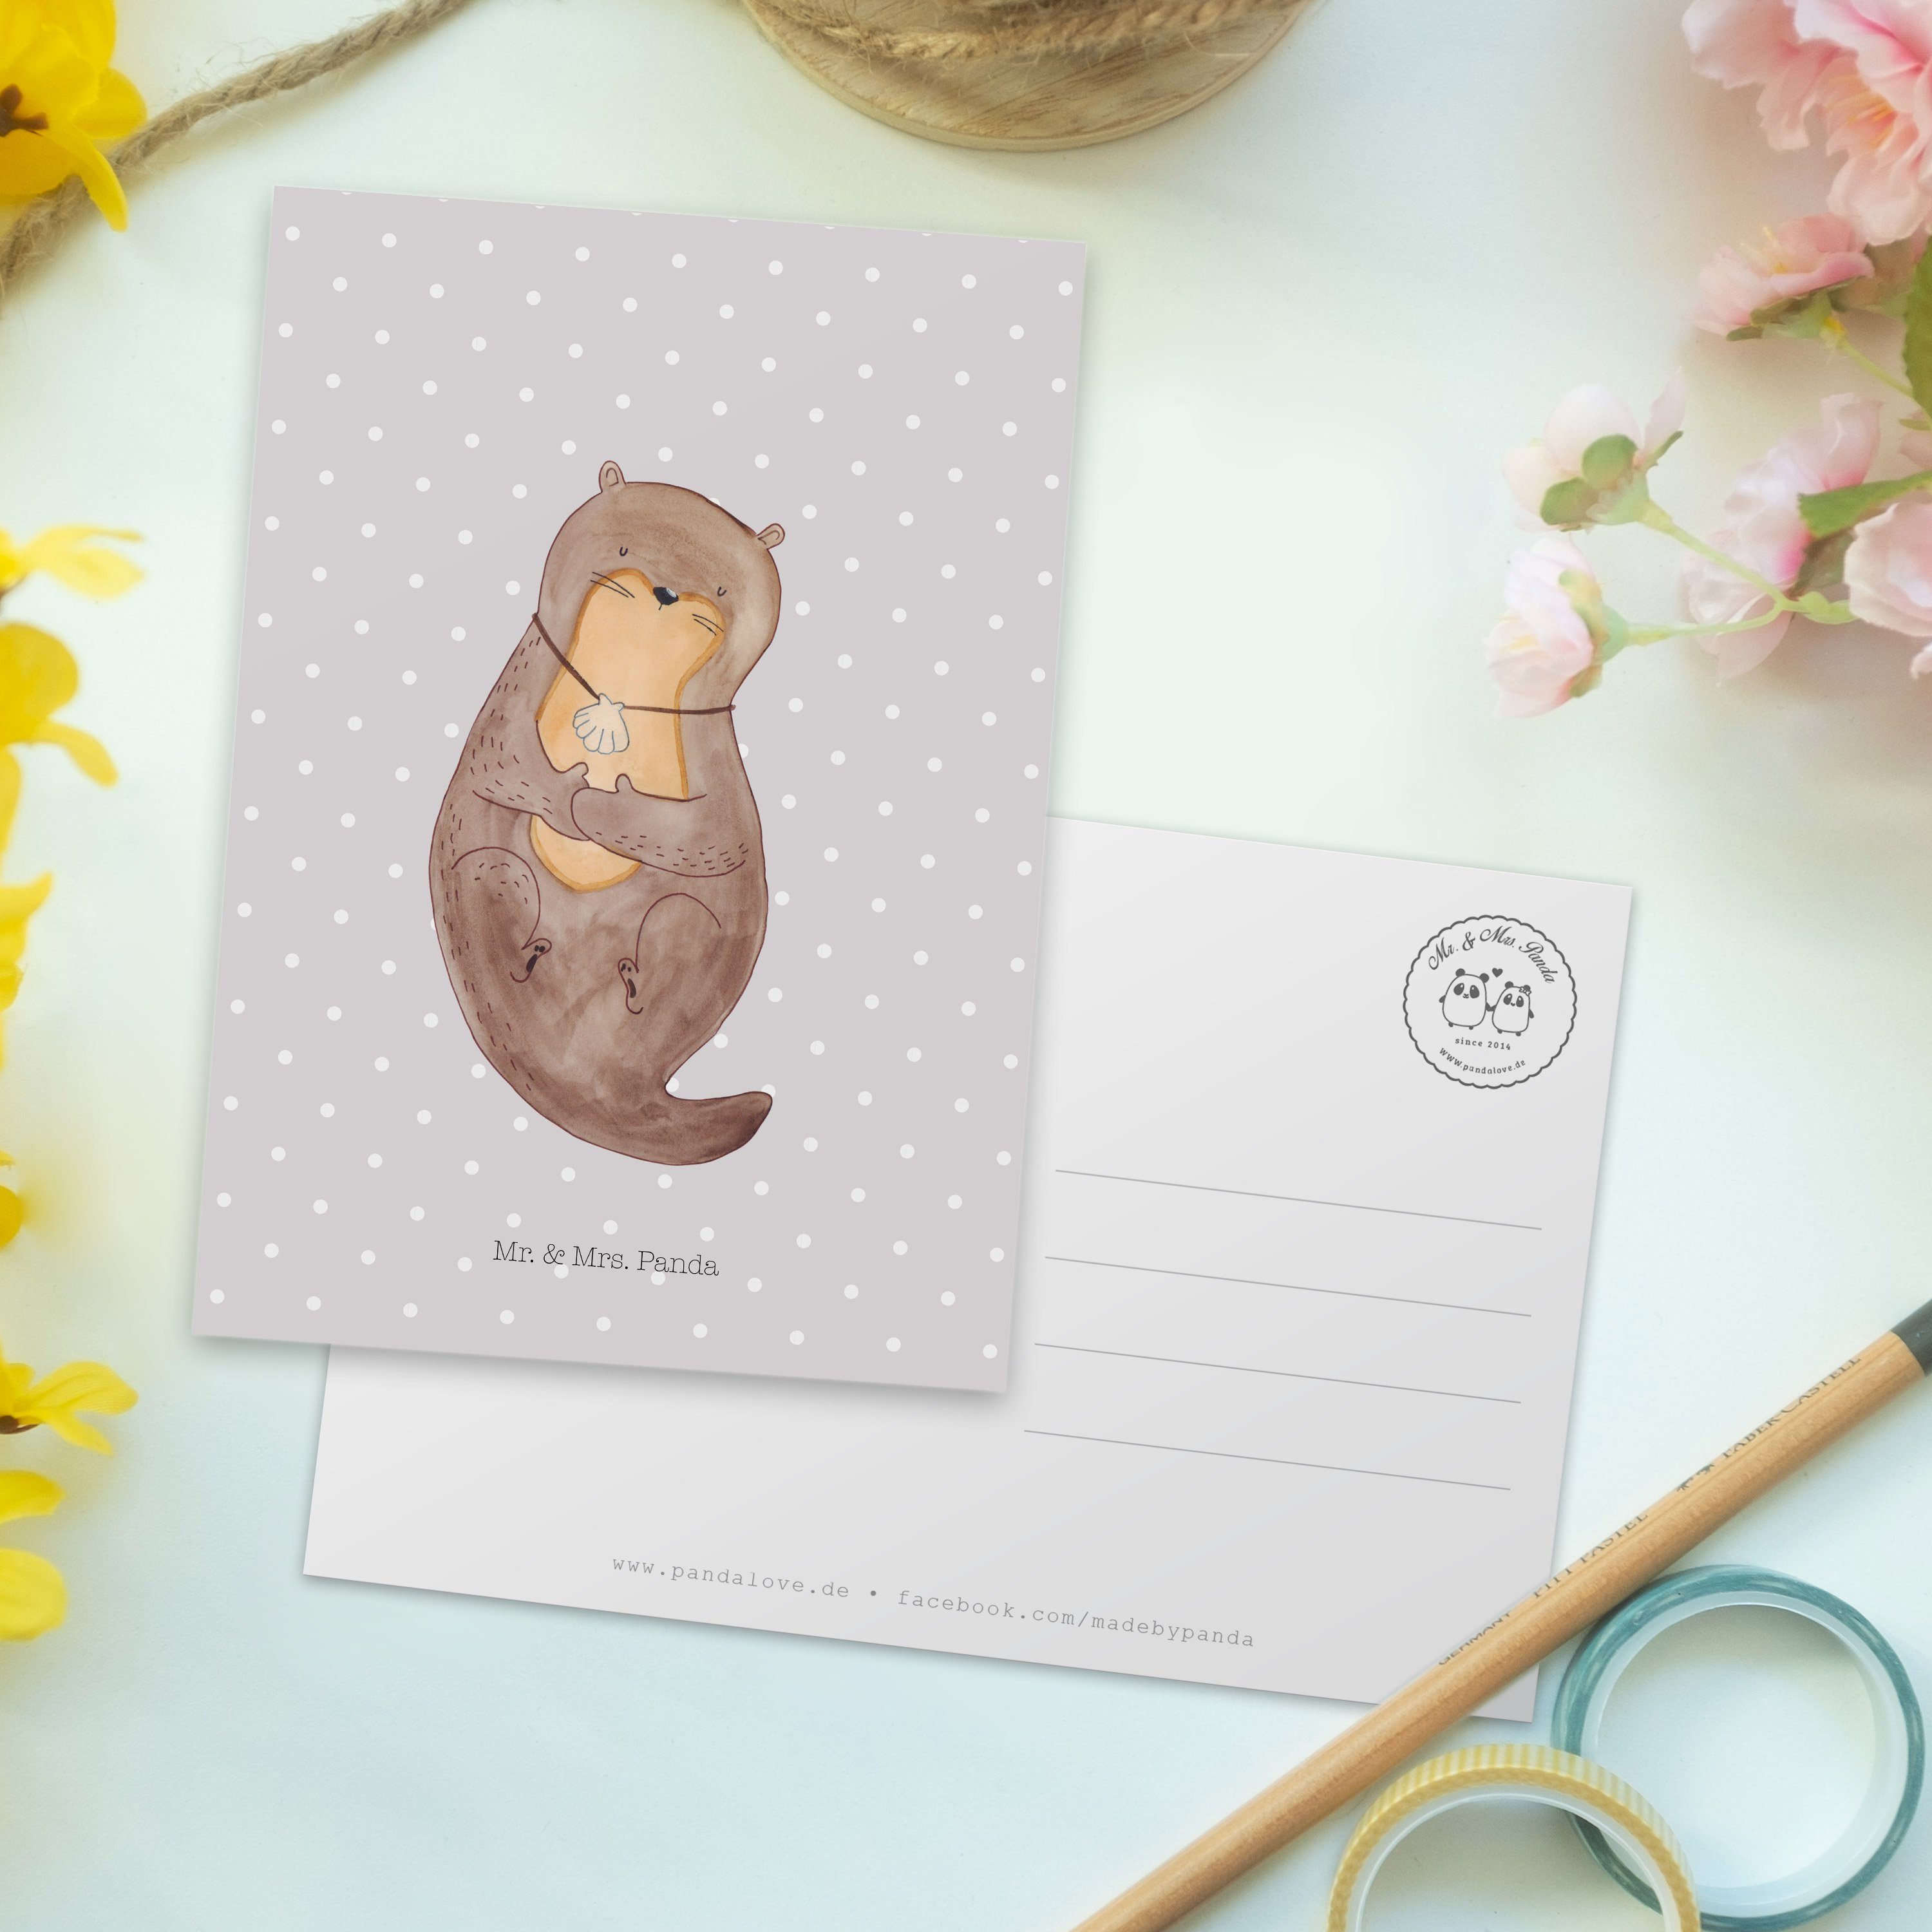 Mr. & Mrs. Panda Postkarte - Mot Geschenk, mit - Grau Otter Muschelmedaillon Otterliebe, Pastell